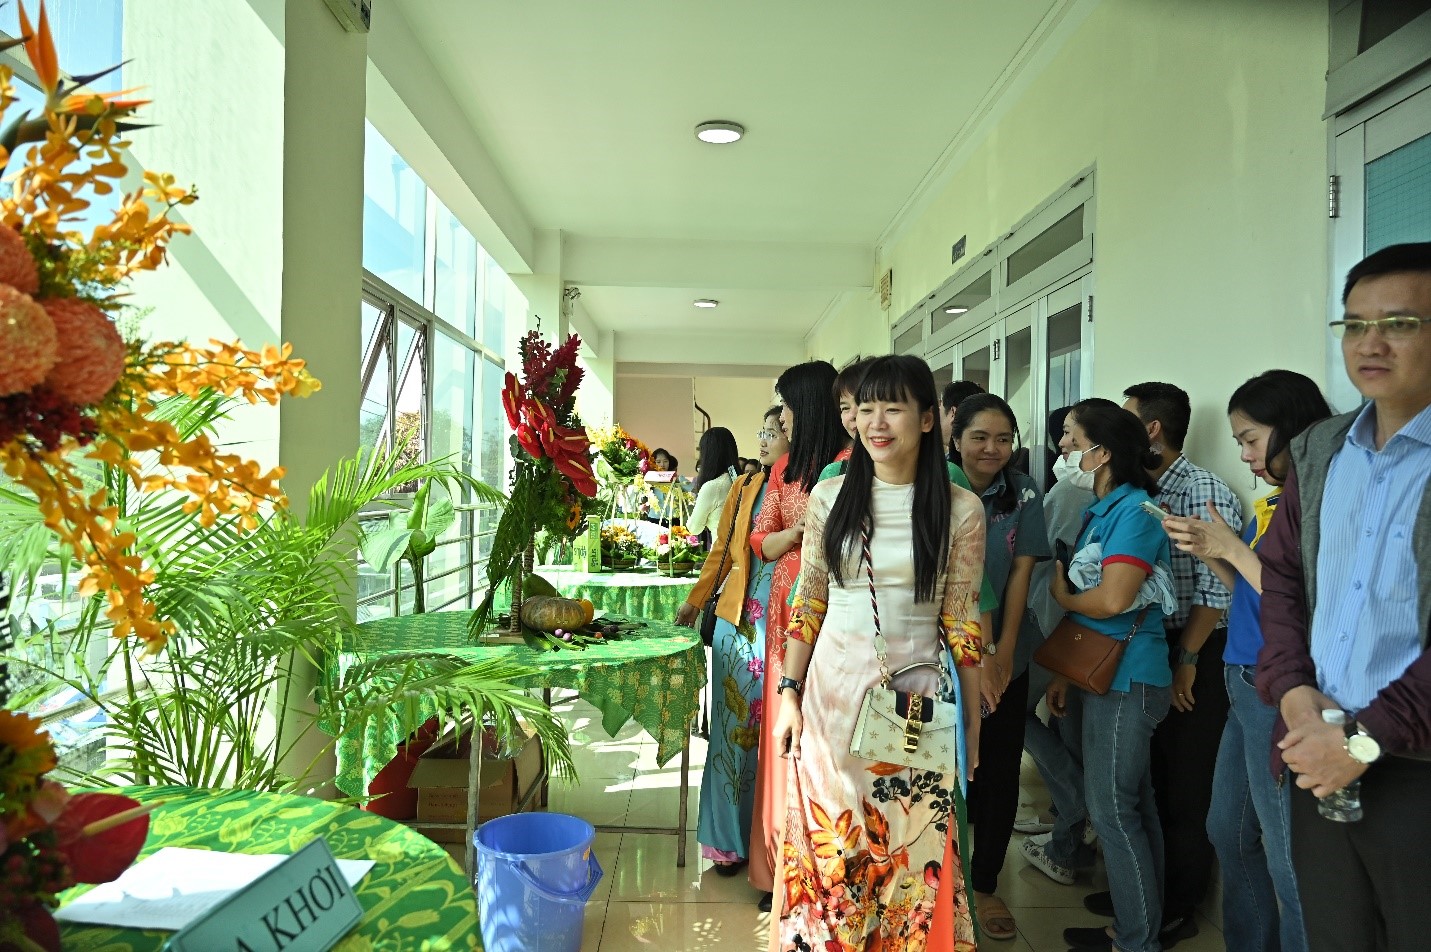 Bà Trịnh Thị Hồng Vân, Phó Tổng Giám Đốc Công Ty Yến Sào Khánh Hòa Trưởng Ban Tổ chức Hội Thi xem khu vực thi cắm hoa